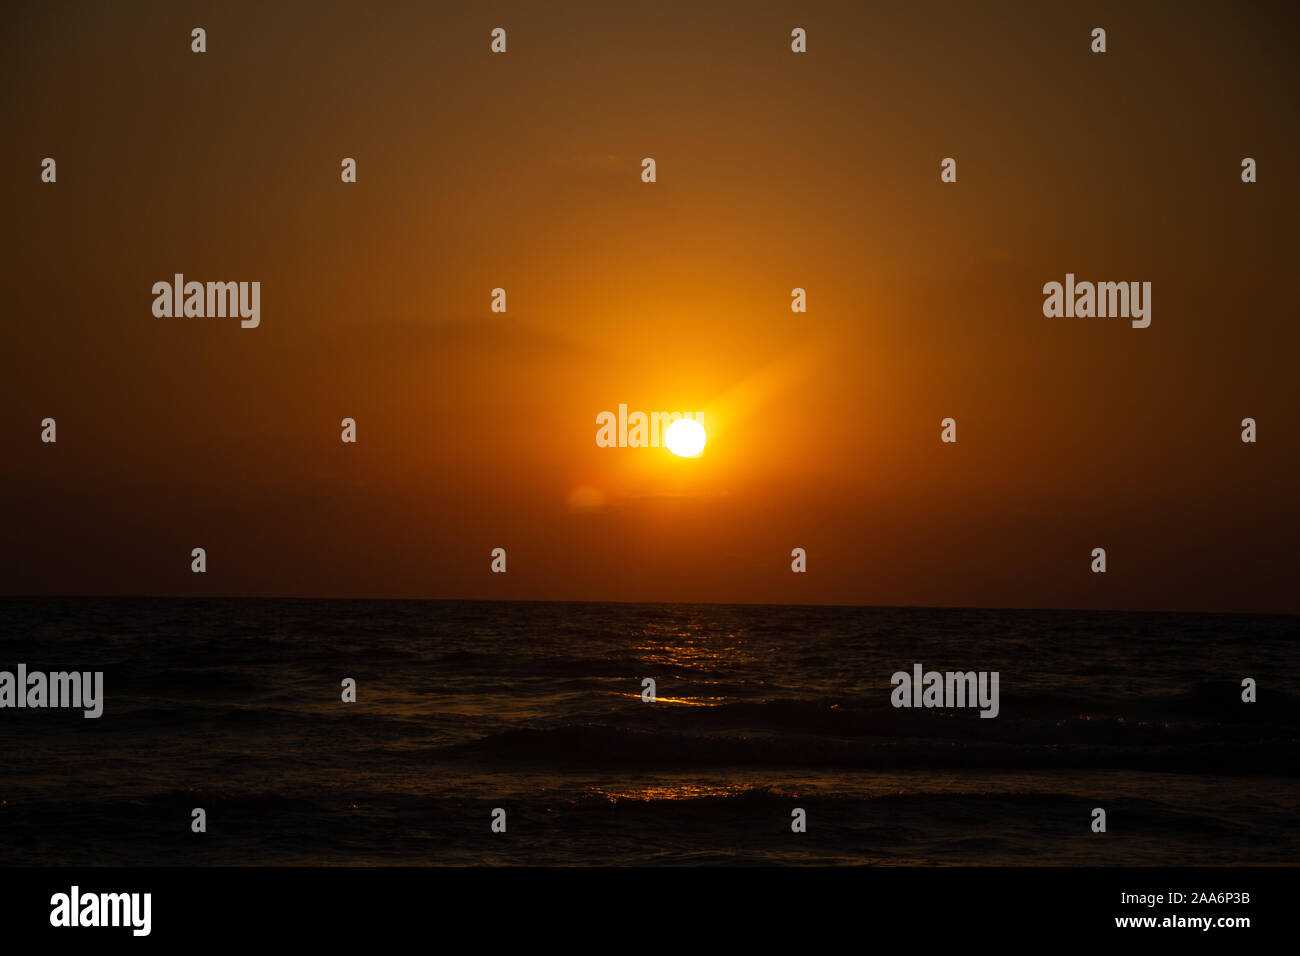 Godendo l'ultima luce del giorno con la fantastica vista del mare e i colori del tramonto rendono nel cielo Foto Stock